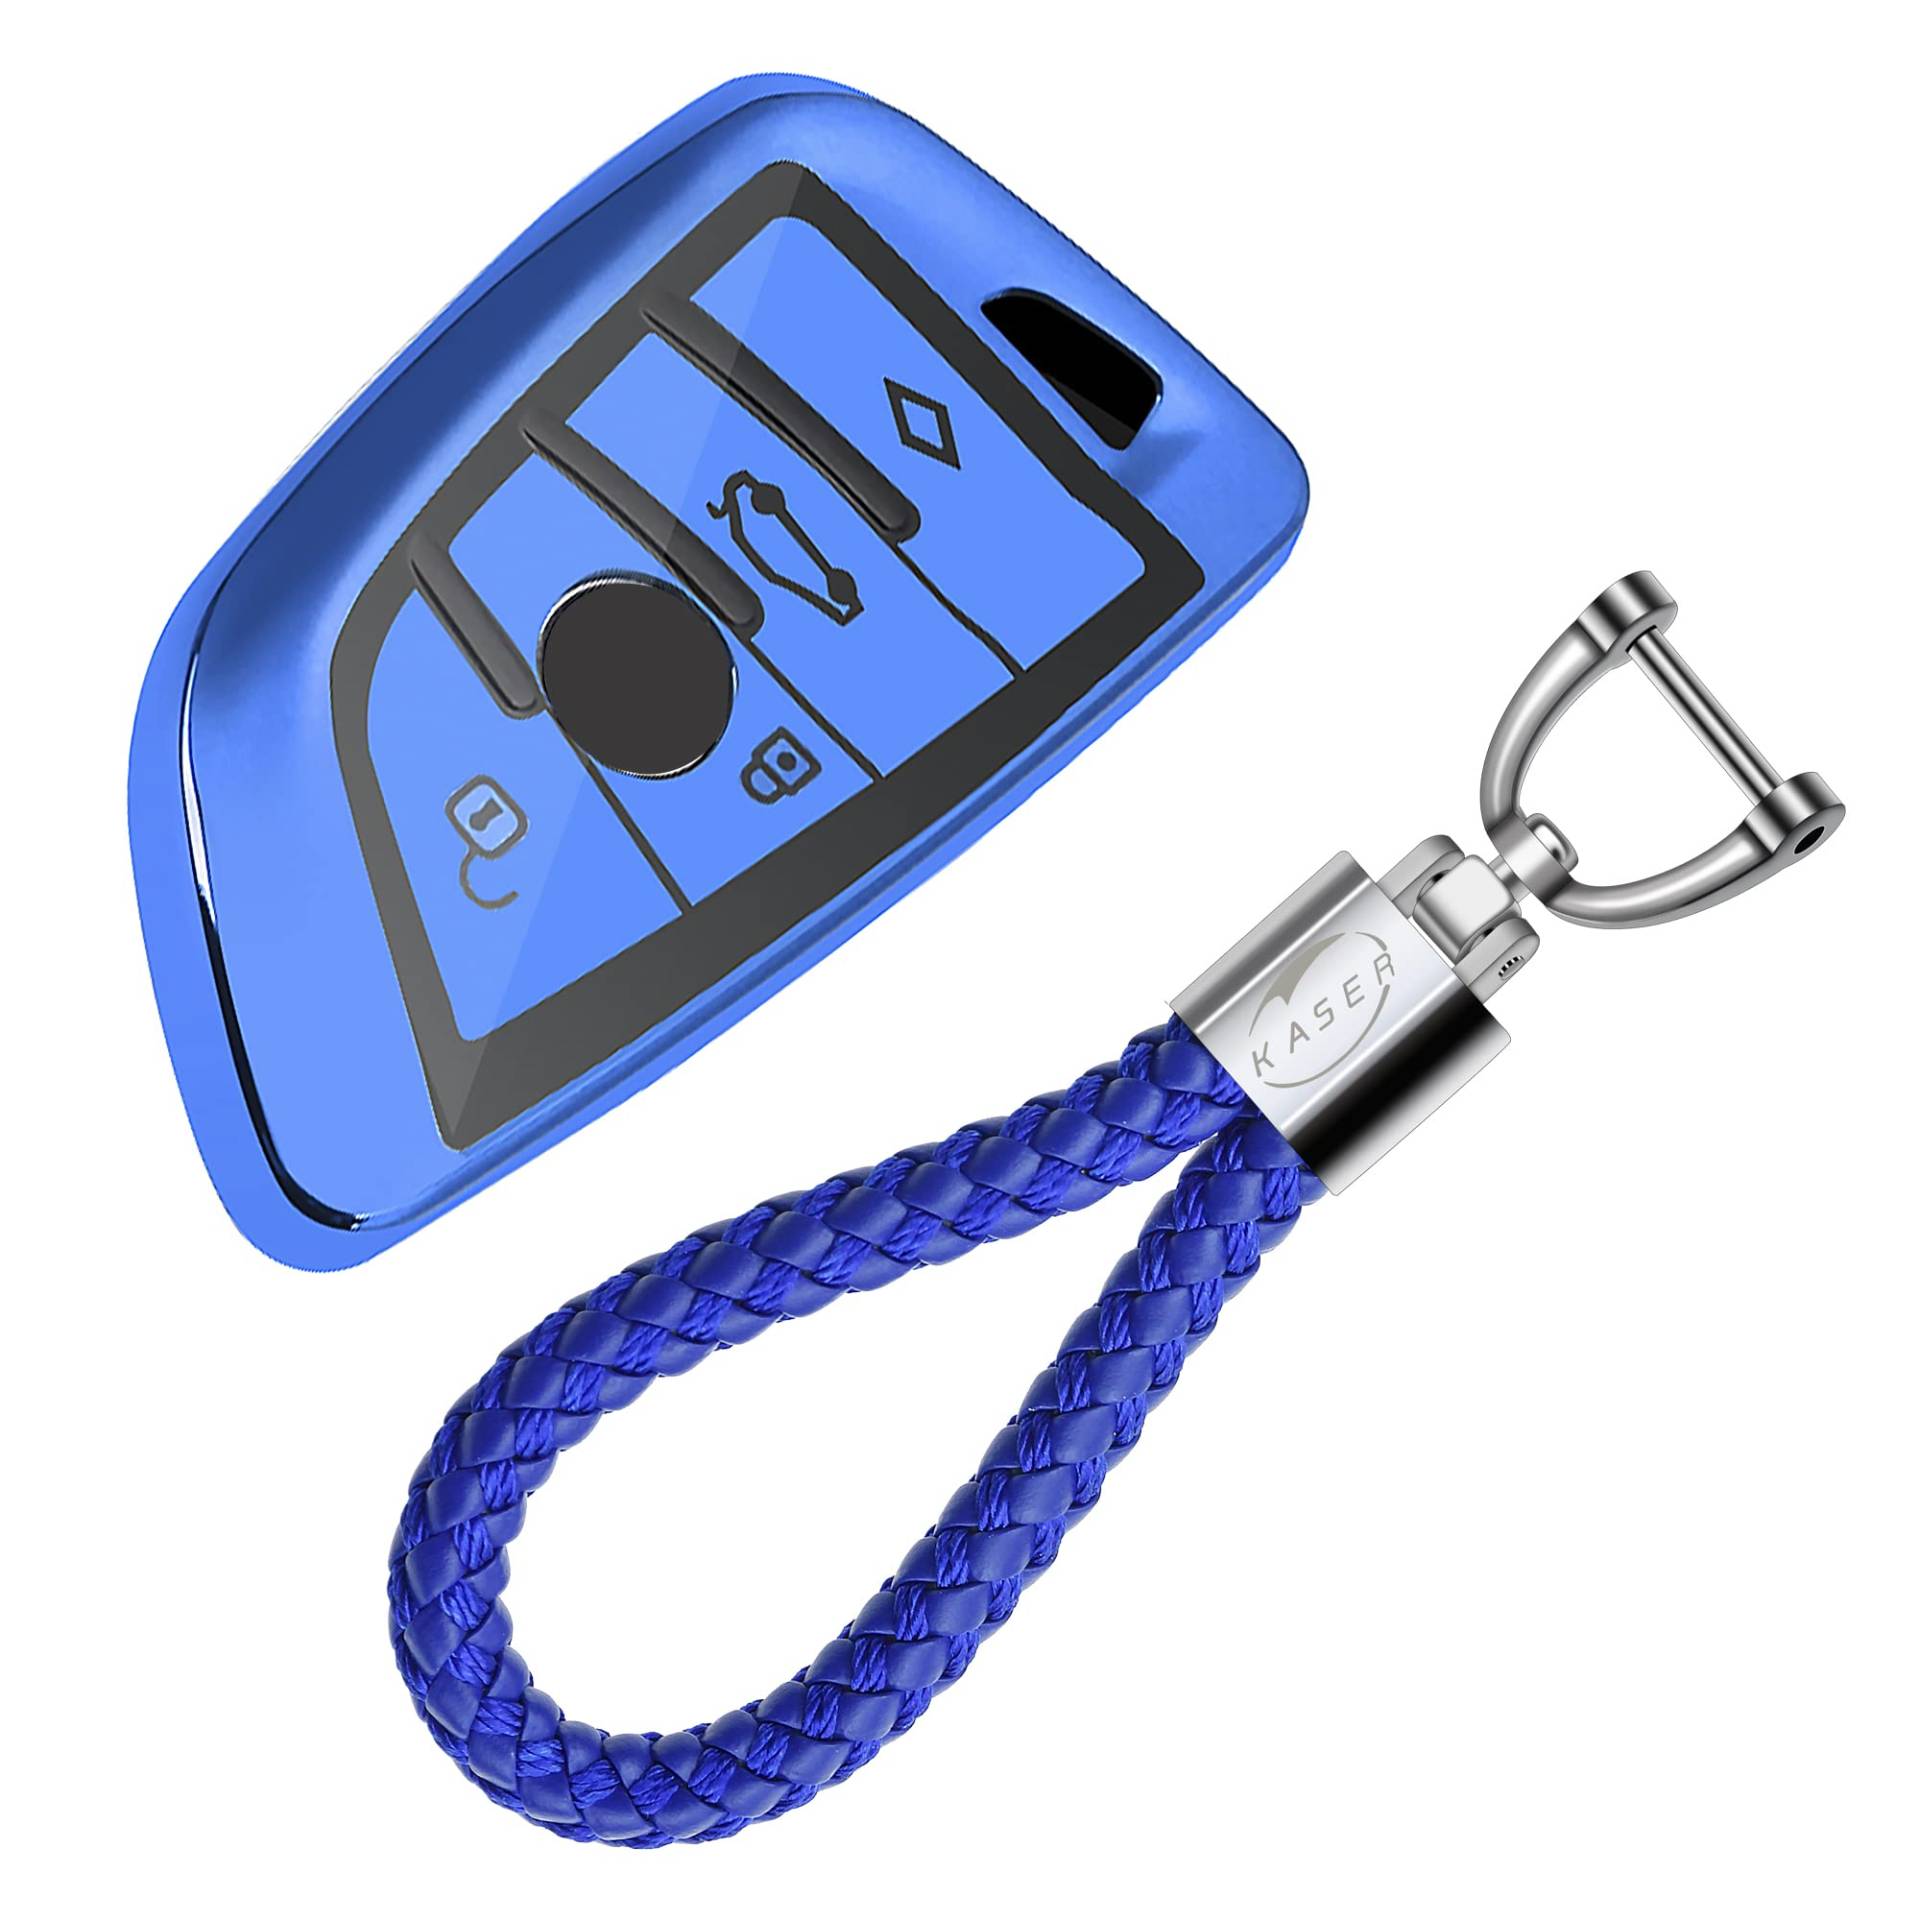 KASER Autoschlüssel Hülle kompatibel für BMW Schlüssel Serie 1 3 5 X1 X3 X4 X5 X6 Schlüsselanhänger mit Abdeckung Silikon Schutzhülle für Fernbedienung Keyless (Blau) von Kaser